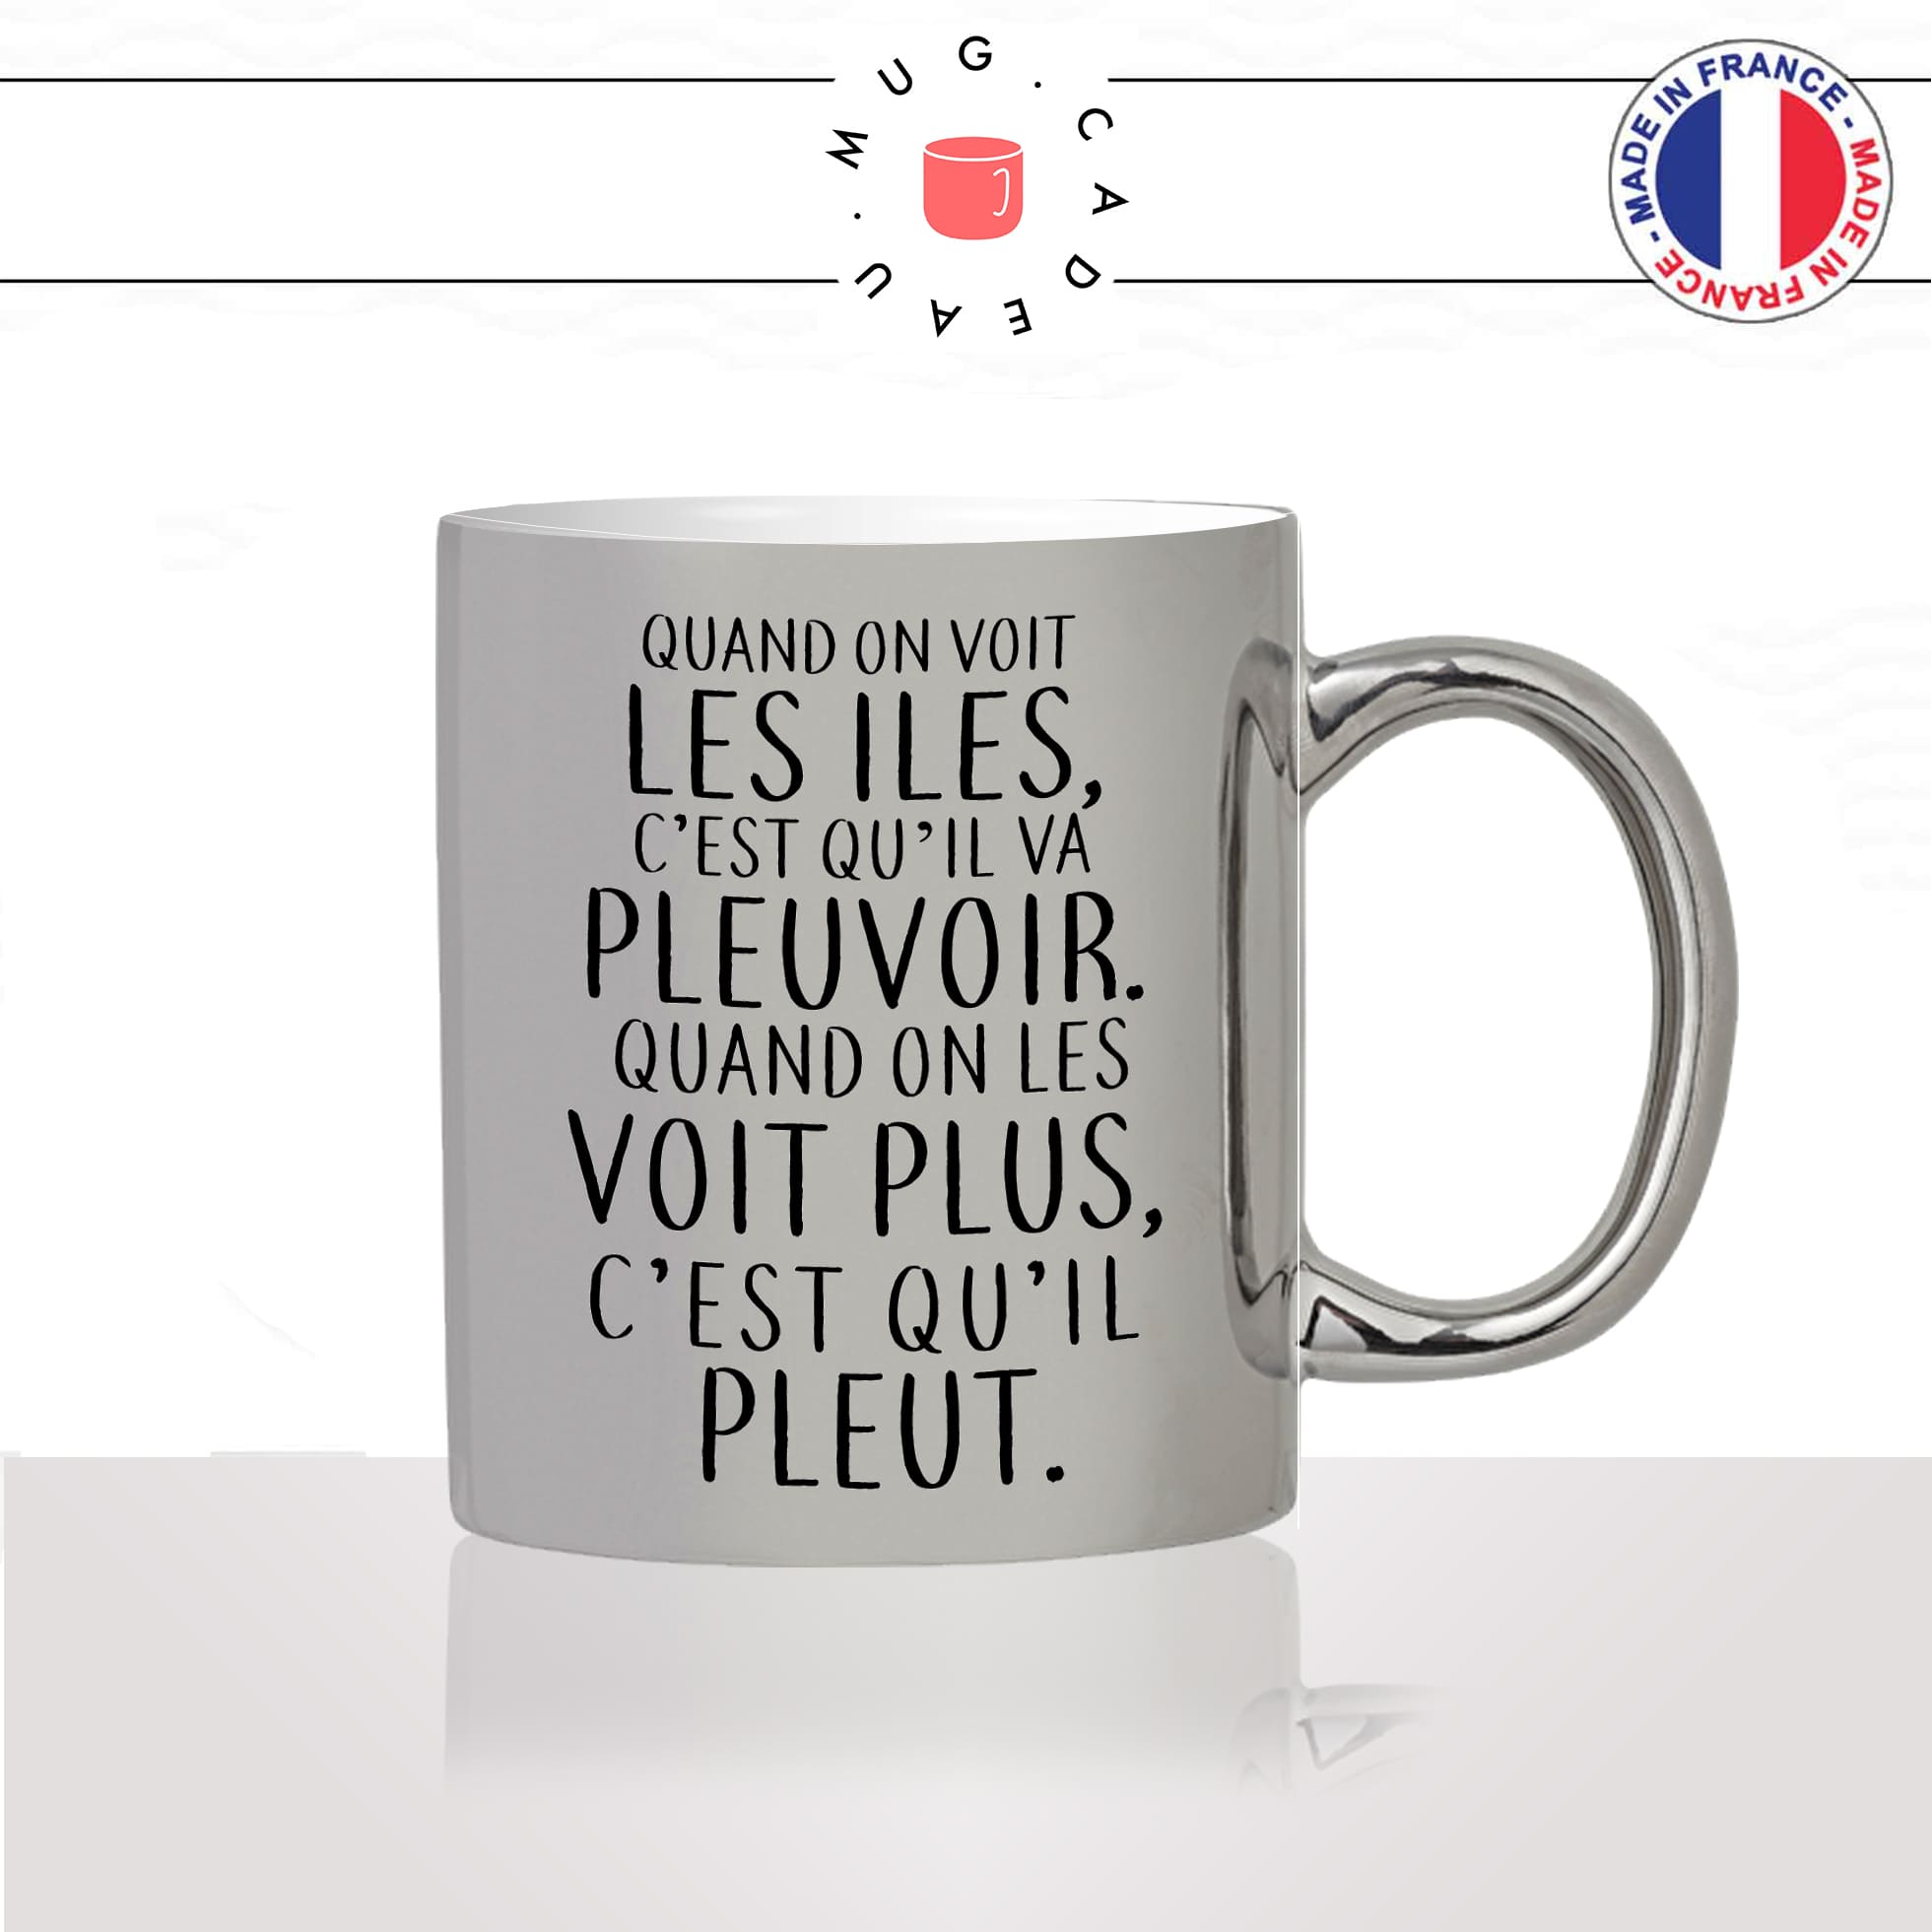 mug-tasse-argent-argenté-silver-dicton-breton-il-pleut-pluie-mauvais-temps-citation-bretagne-humour-france-idée-cadeau-fun-cool-café-thé2